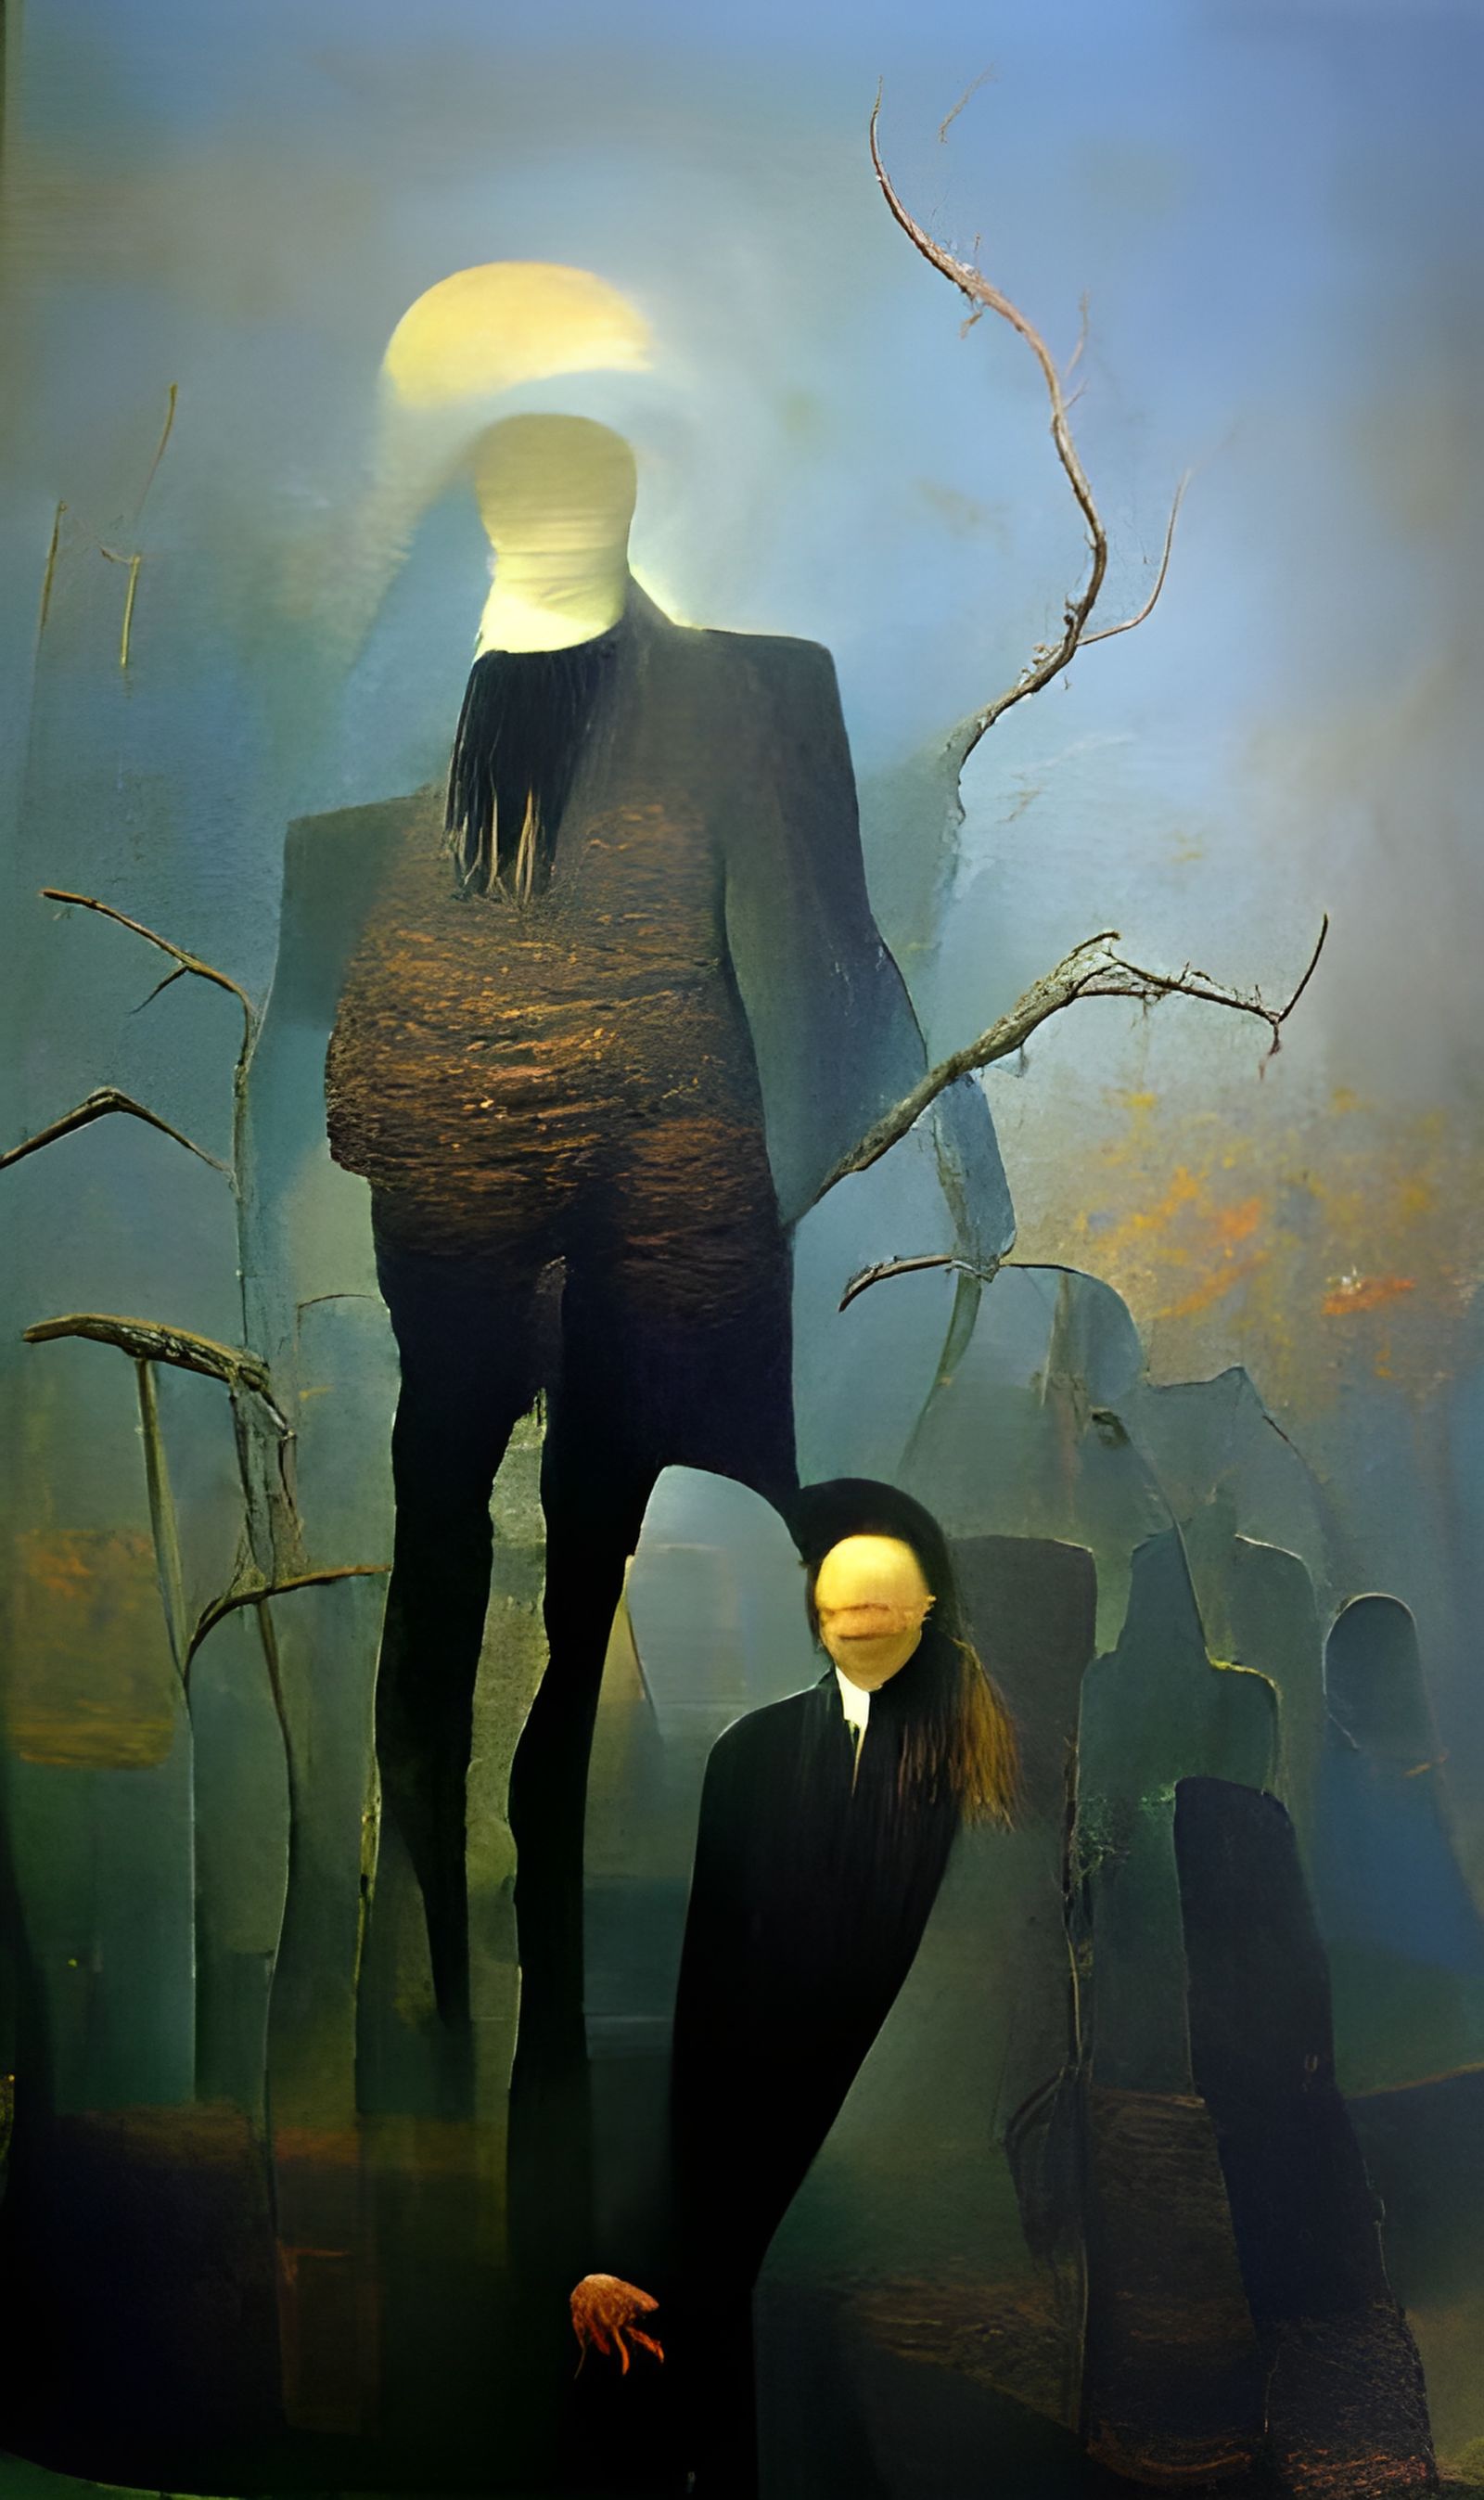 Zdzisław Beksiński's Slender Man